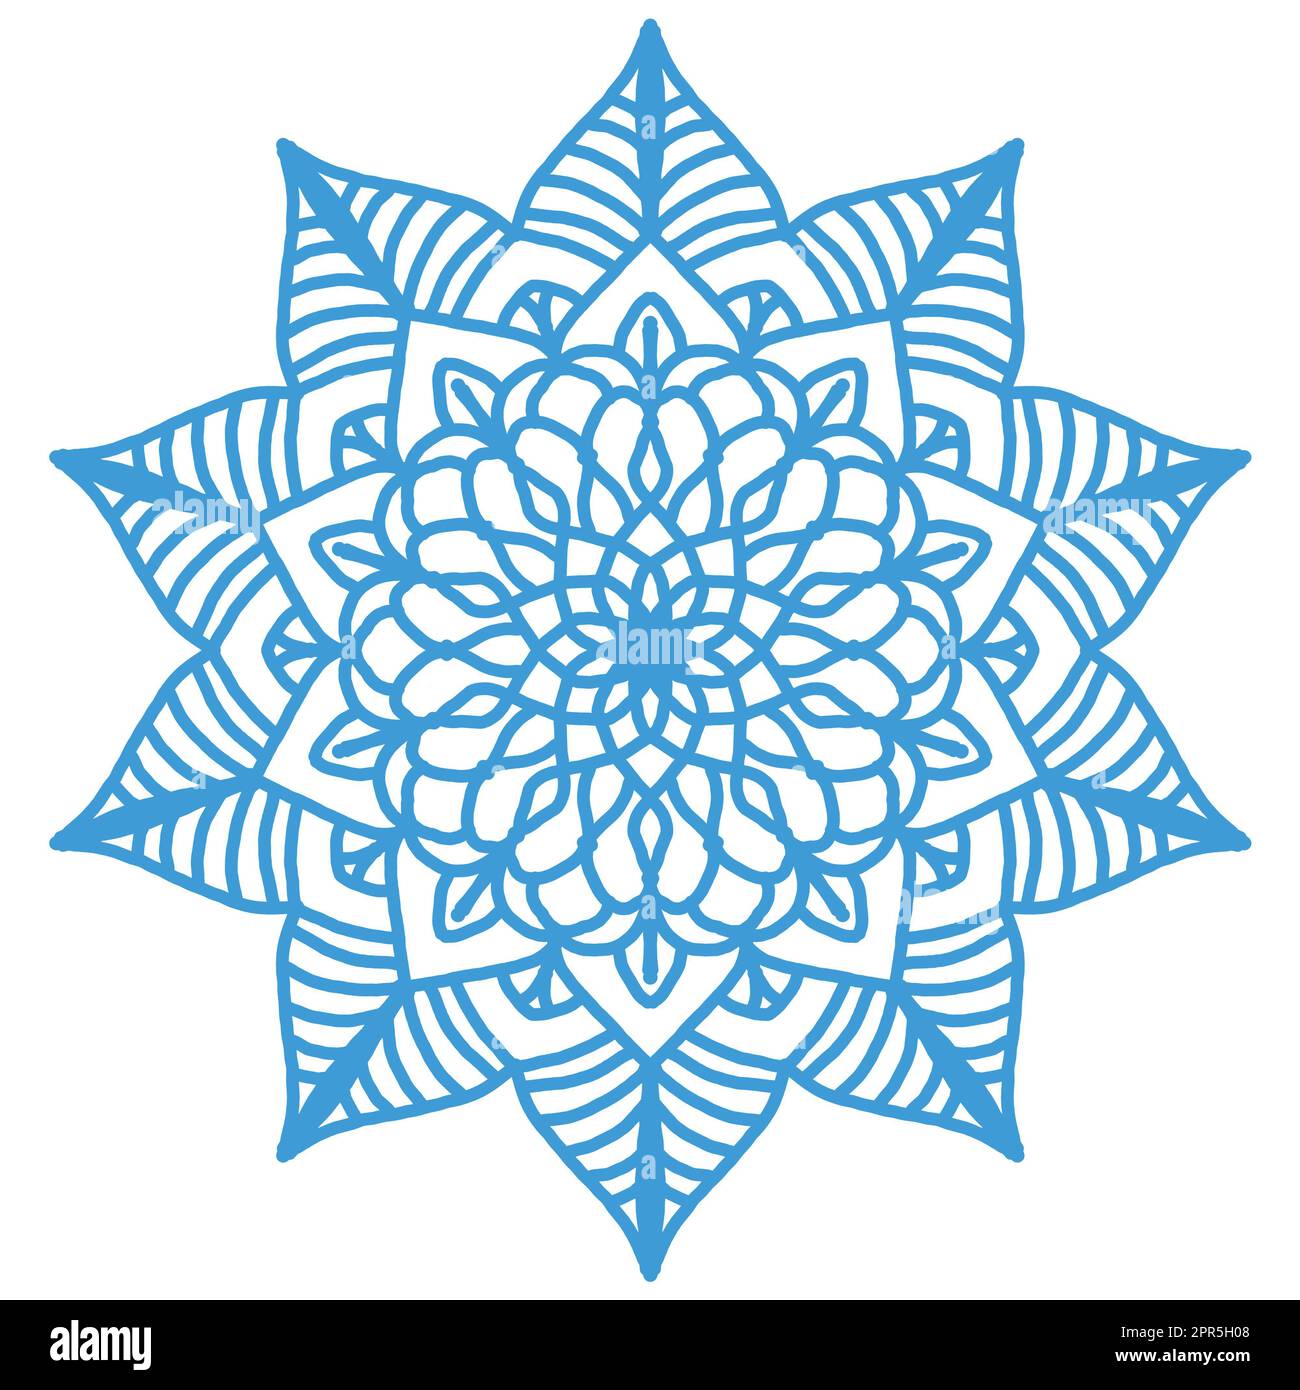 Entdecken Sie komplexe und fesselnde abstrakte Kunst und Designs mit Blumenmuster. Diese komplizierten floralen Mandala-Muster bieten eine Mischung aus Raffinesse Stockfoto